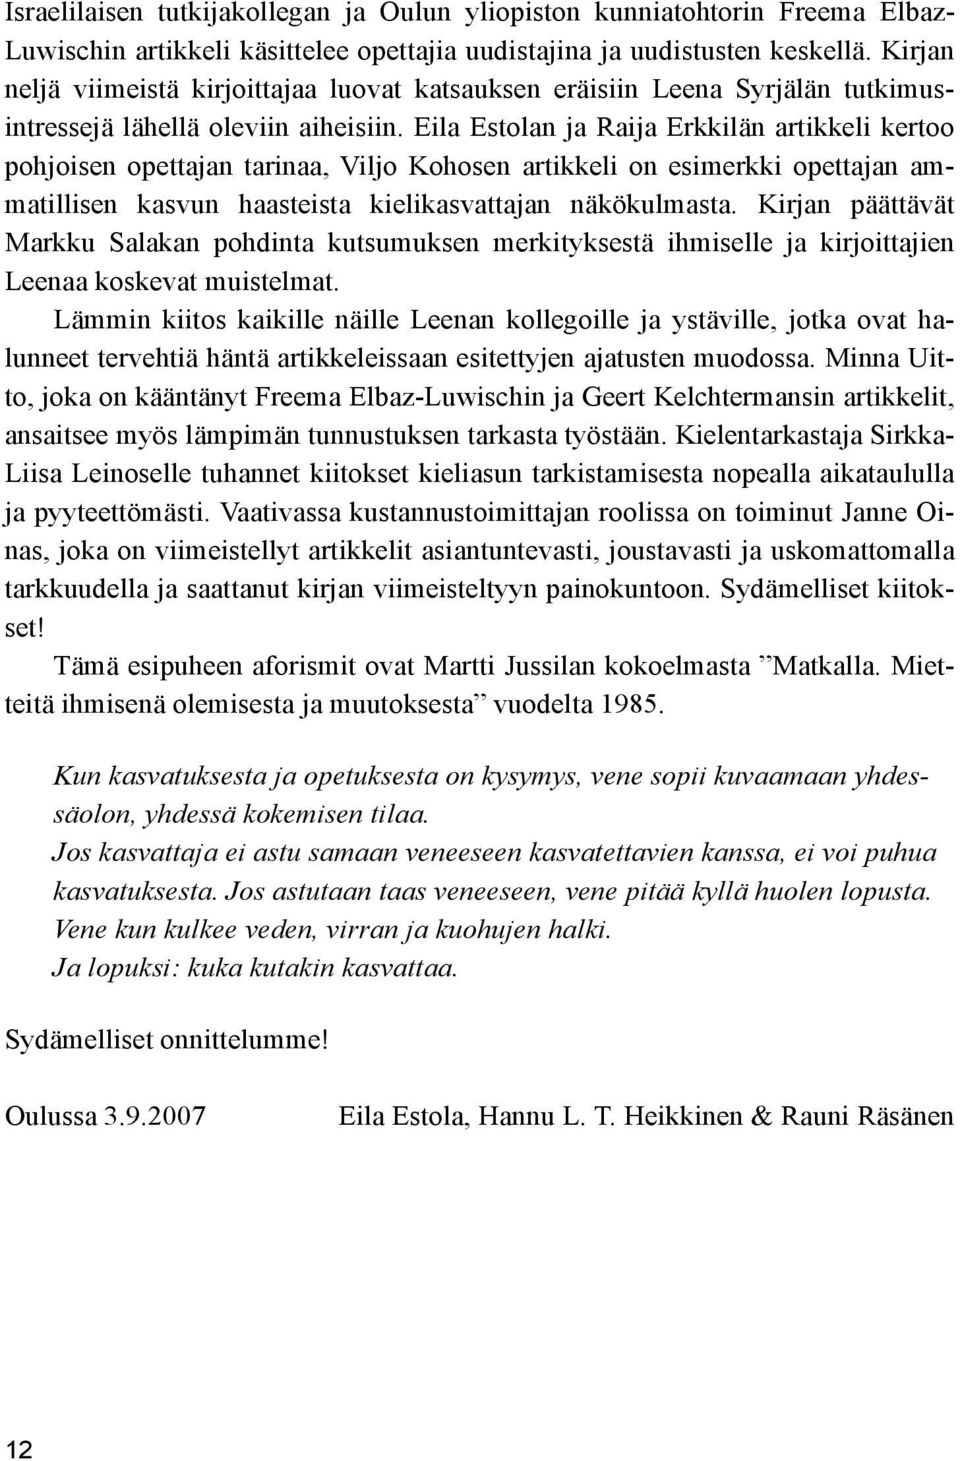 Eila Estolan ja Raija Erkkilän artikkeli kertoo pohjoisen opettajan tarinaa, Viljo Kohosen artikkeli on esimerkki opettajan ammatillisen kasvun haasteista kielikasvattajan näkökulmasta.